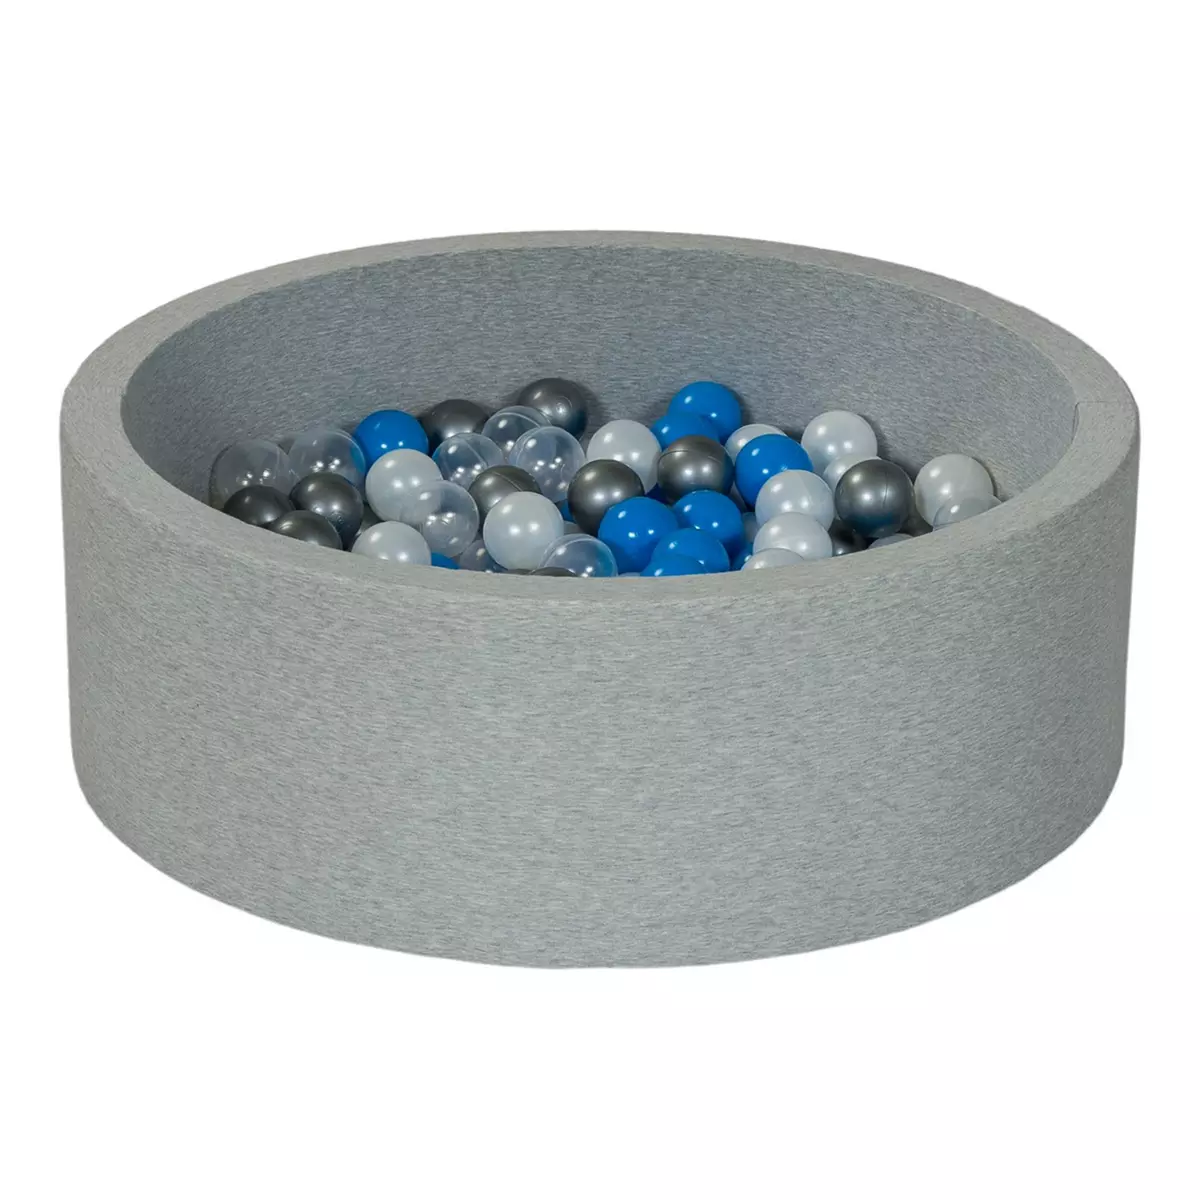  Piscine à balles Aire de jeu + 200 balles perle, transparent, bleu, argent